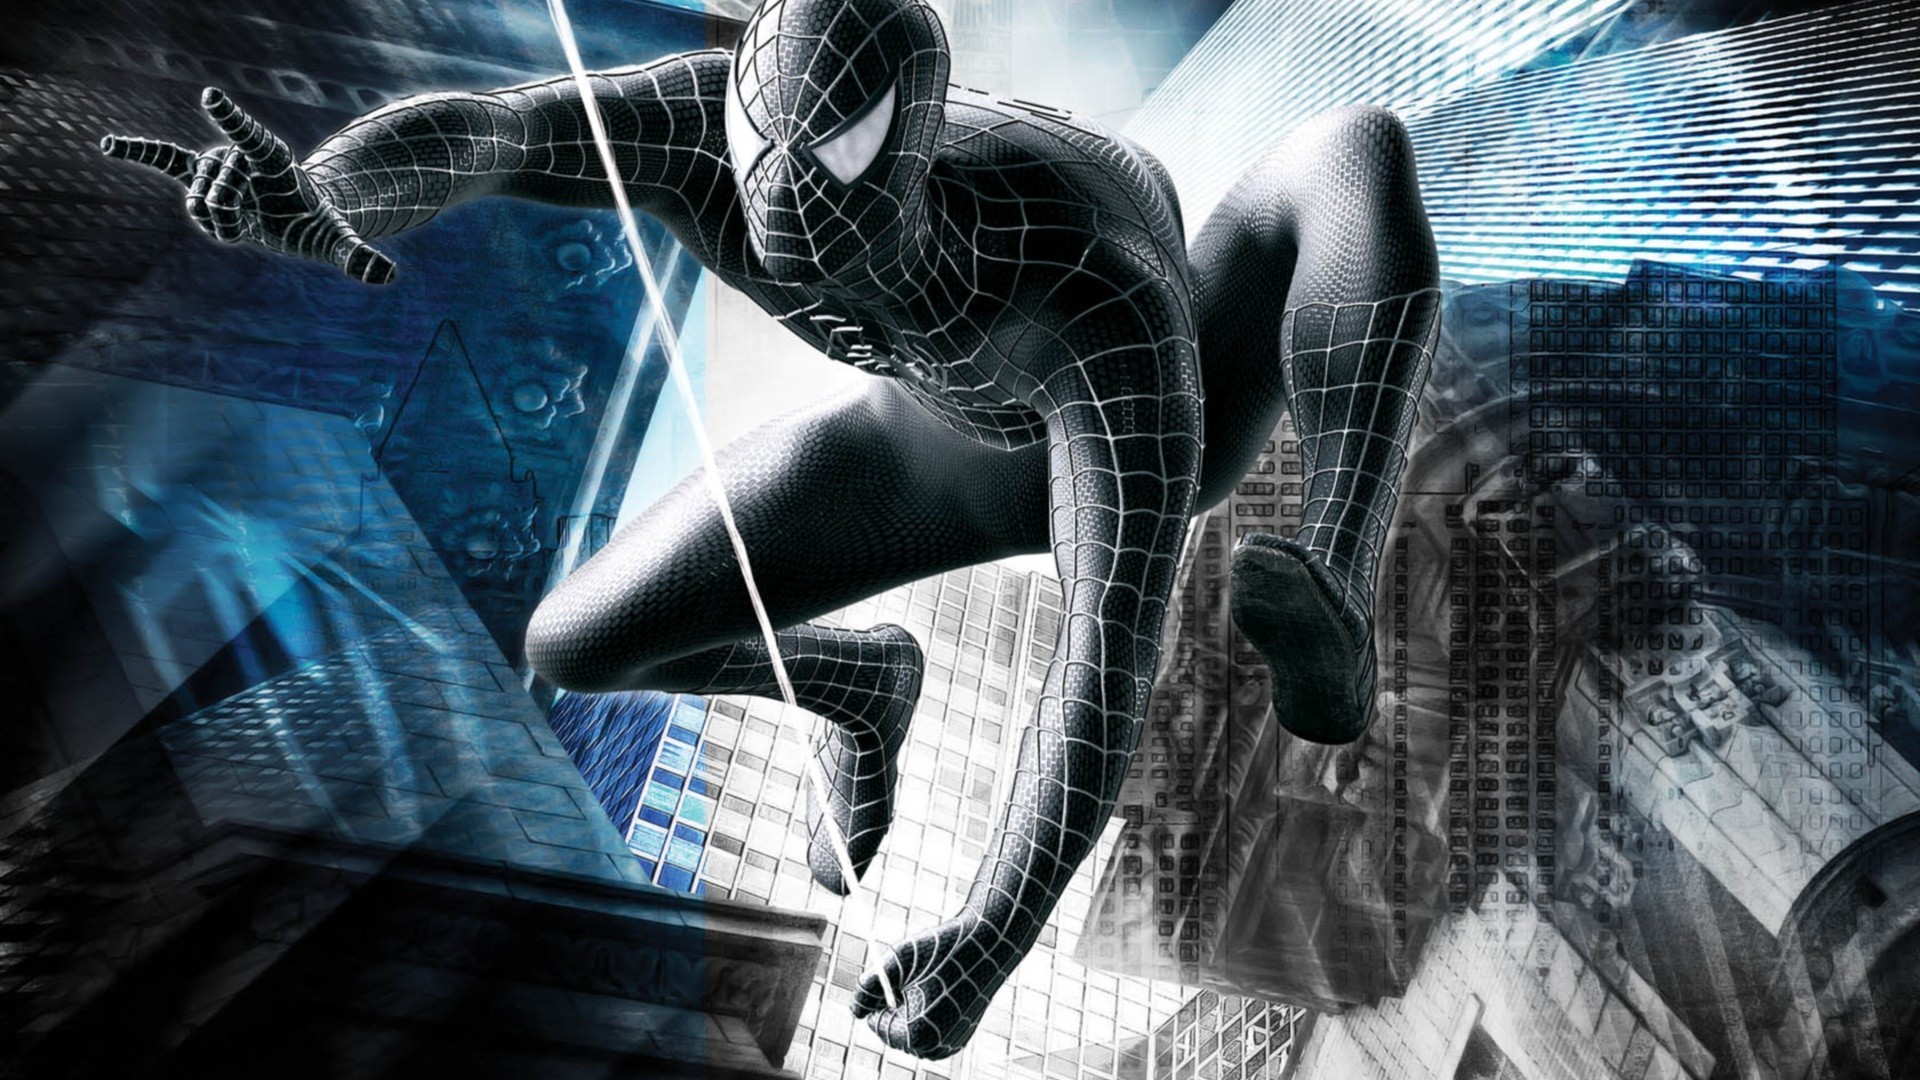 spider man 3 sfondi hd,uomo ragno,cg artwork,personaggio fittizio,disegno grafico,design